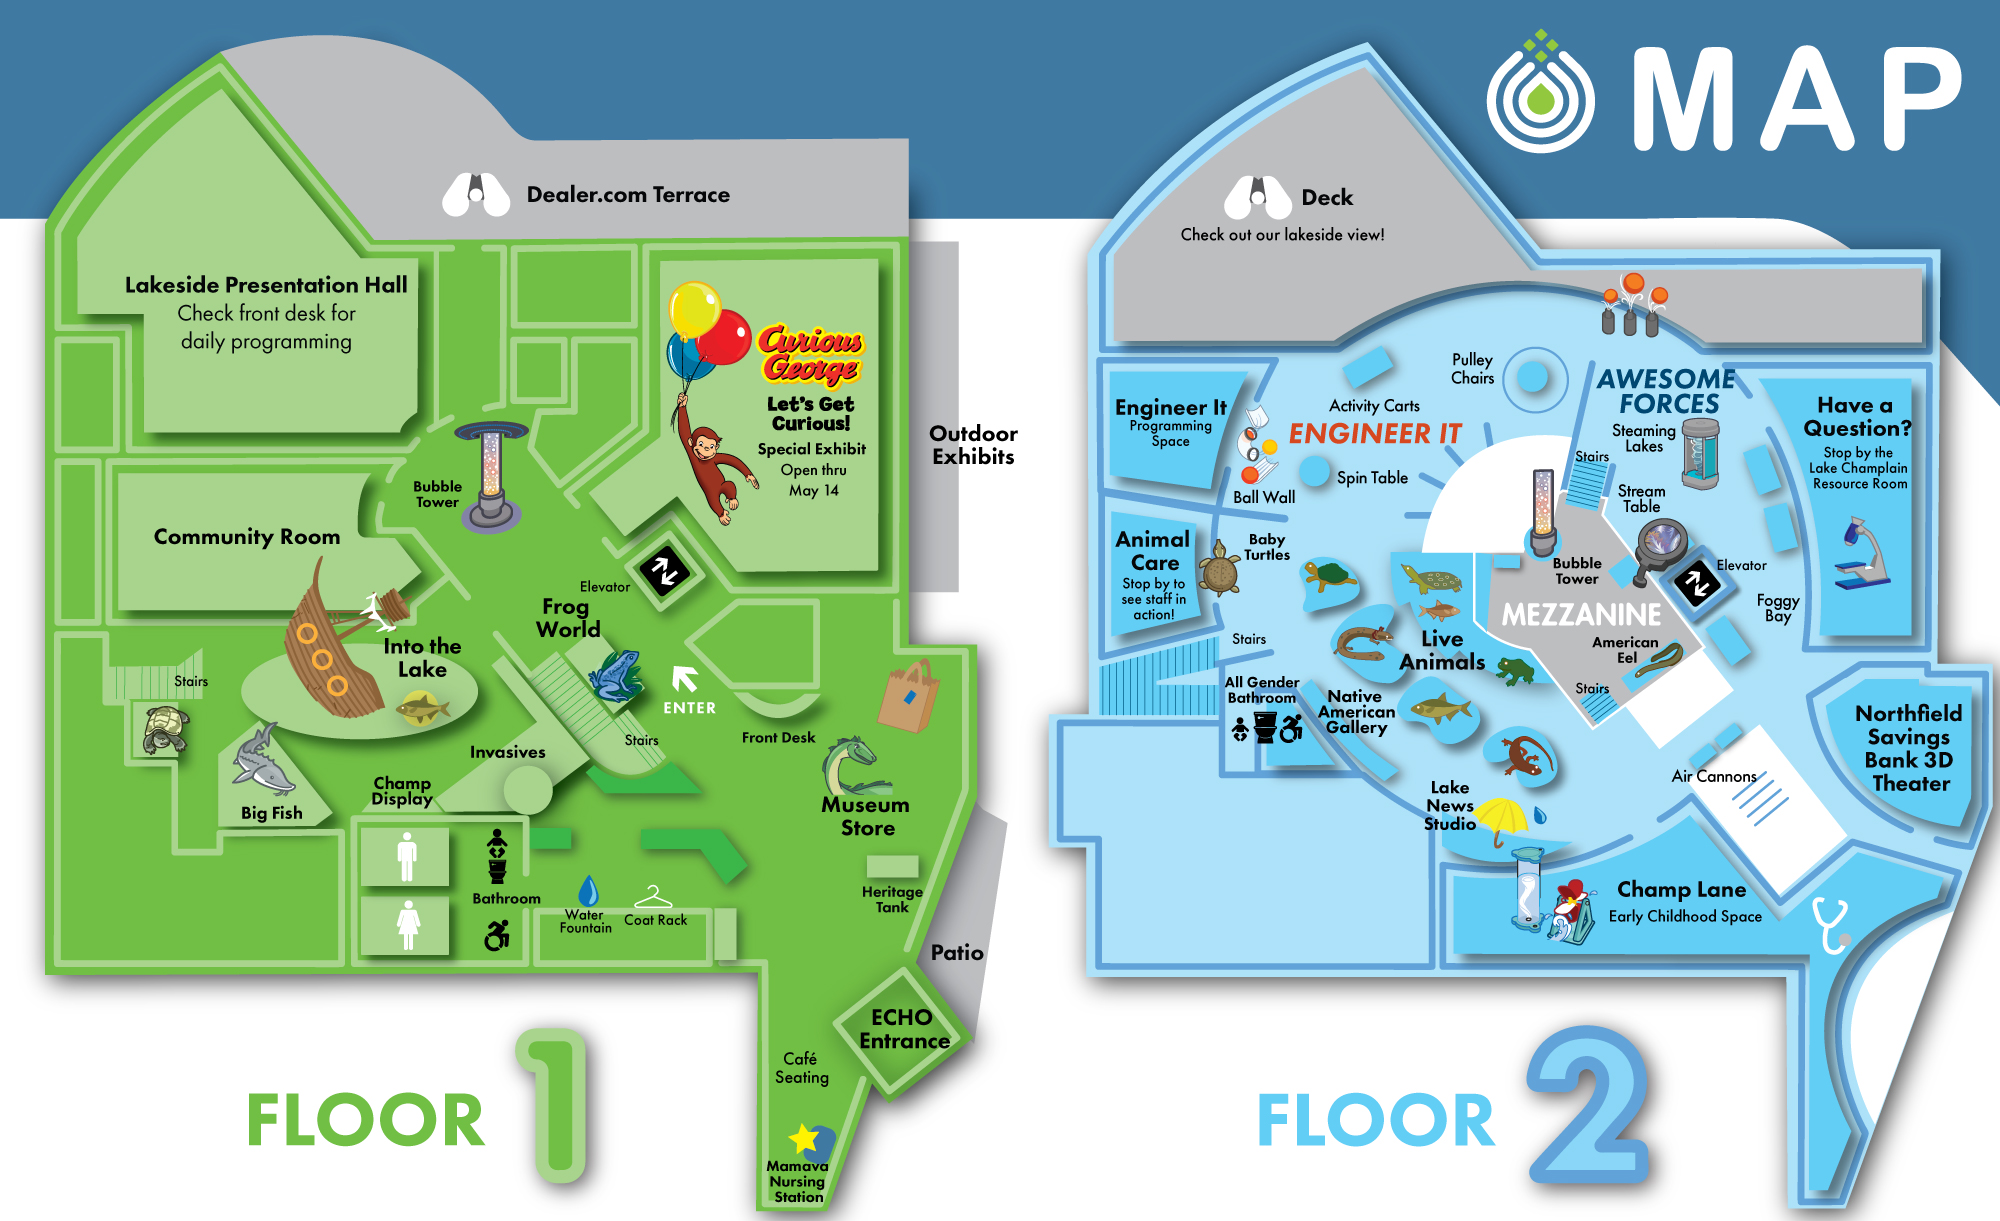 ECHO's Museum Map. Map shows Floor 1 and Floor 2